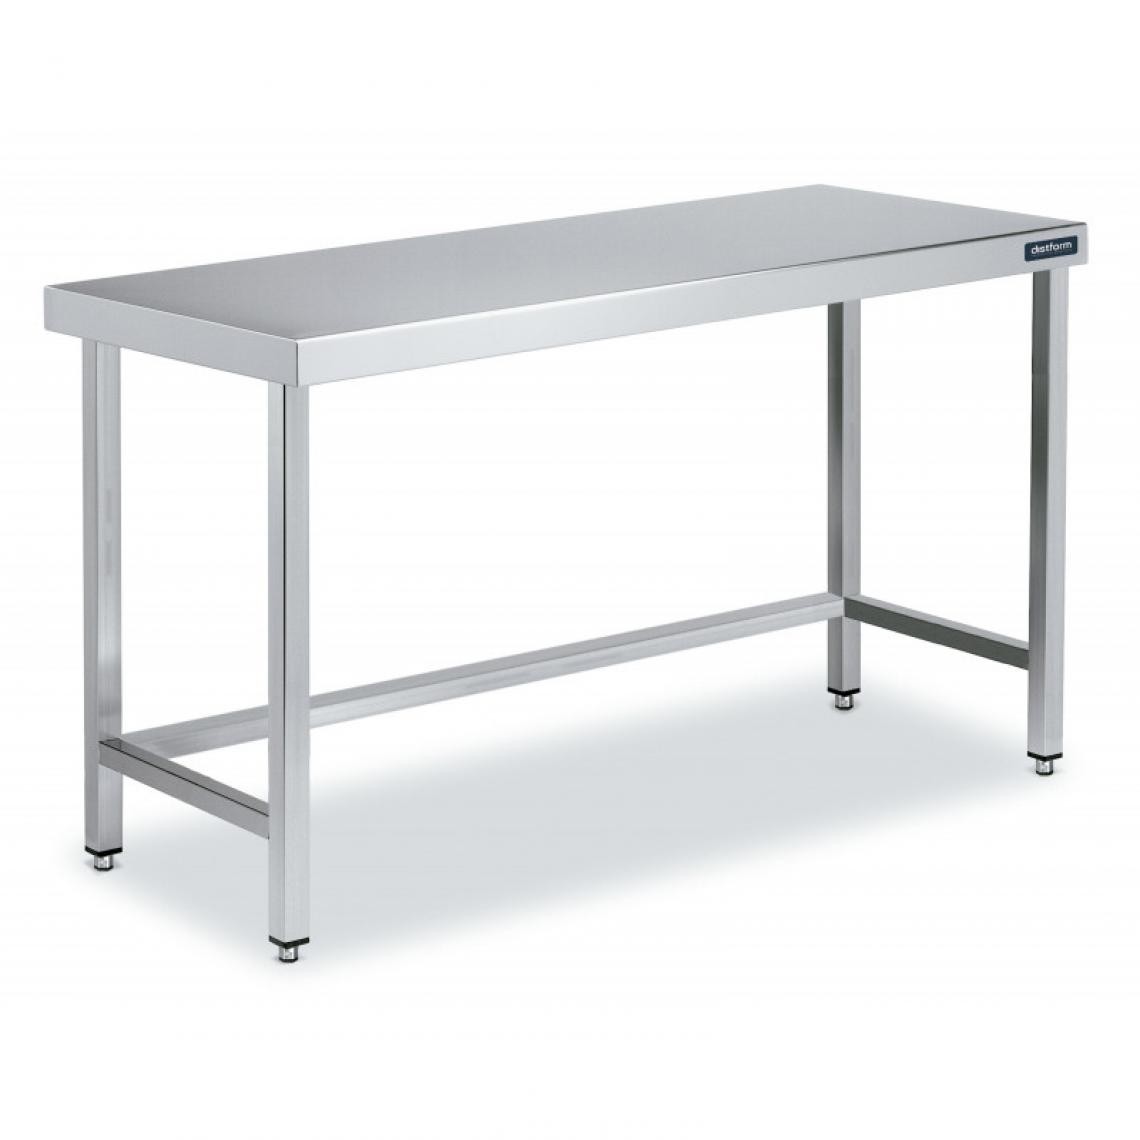 DISTFORM - Table Centrale en Inox avec renforts Profondeur 600mm - Distform - Acier inoxydable1000x600 - Tables à manger